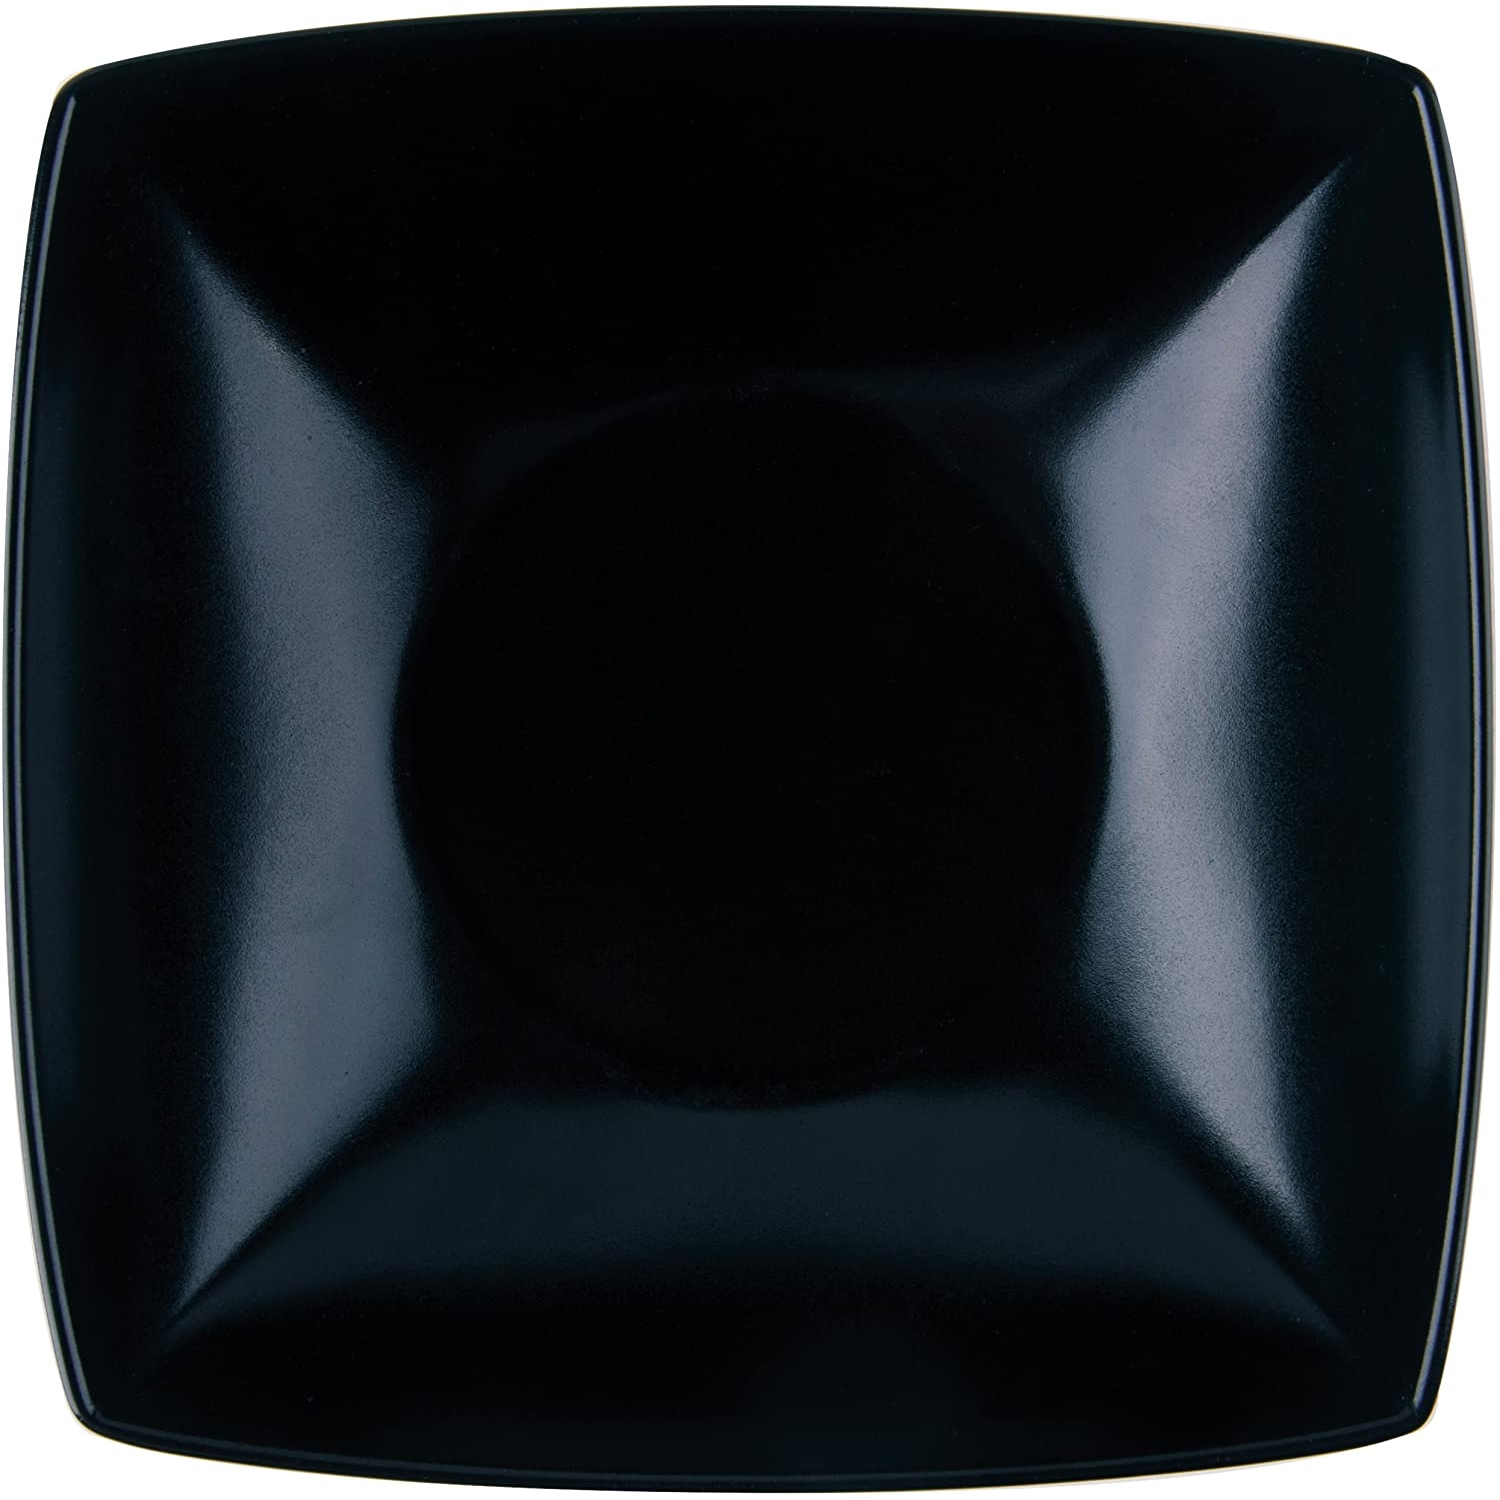 Excelsa Eclipse piatto Fondo ceramica nero cod.61566